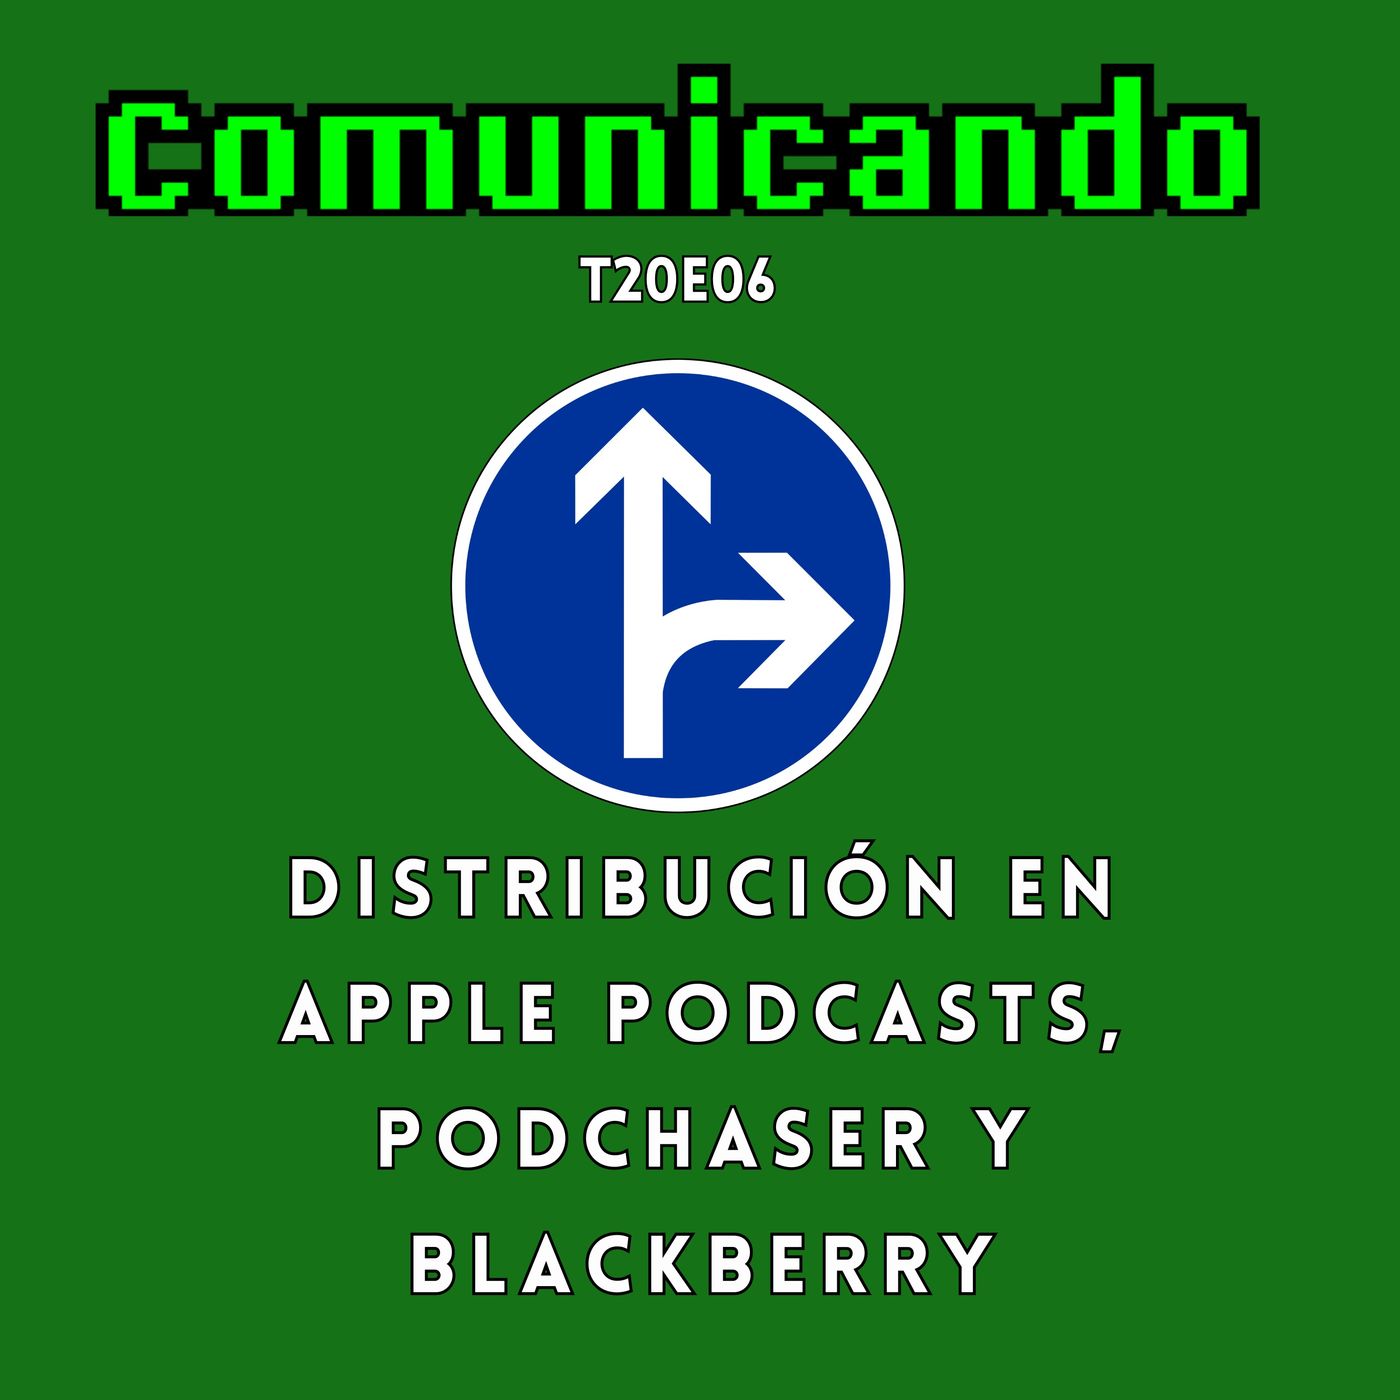 Distribución mediante Apple podcasts, Podchaser y Blackberry, la película